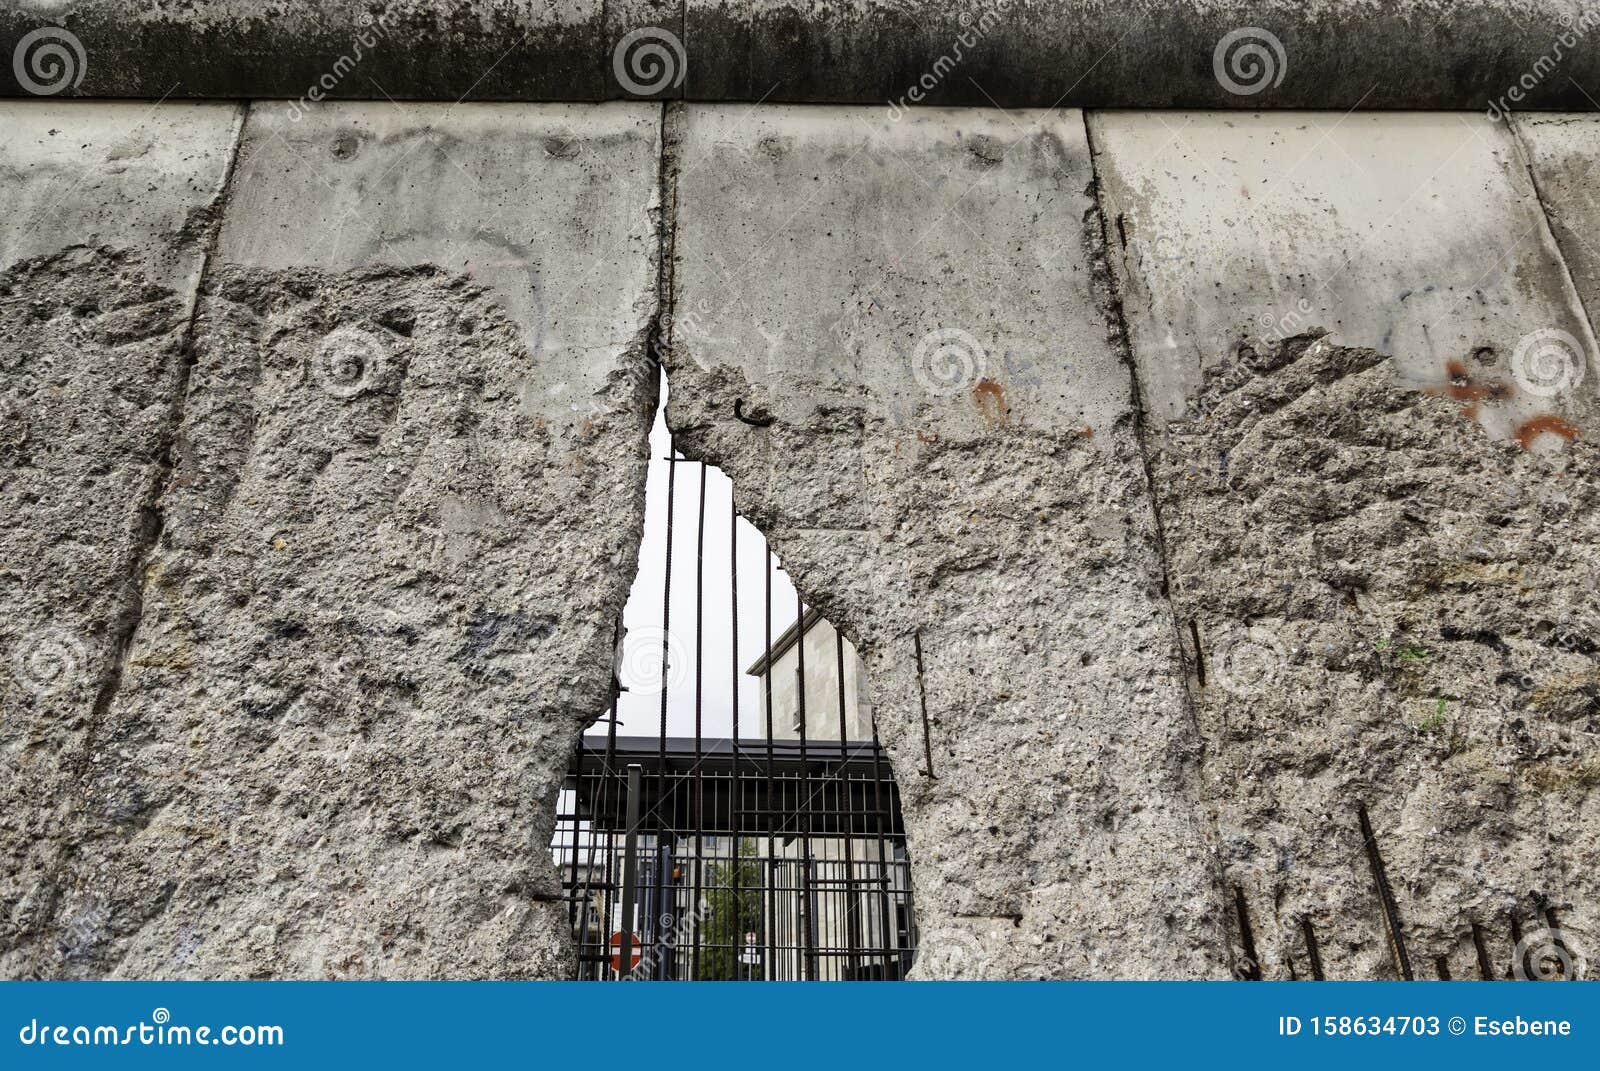 visit berlin wall remains